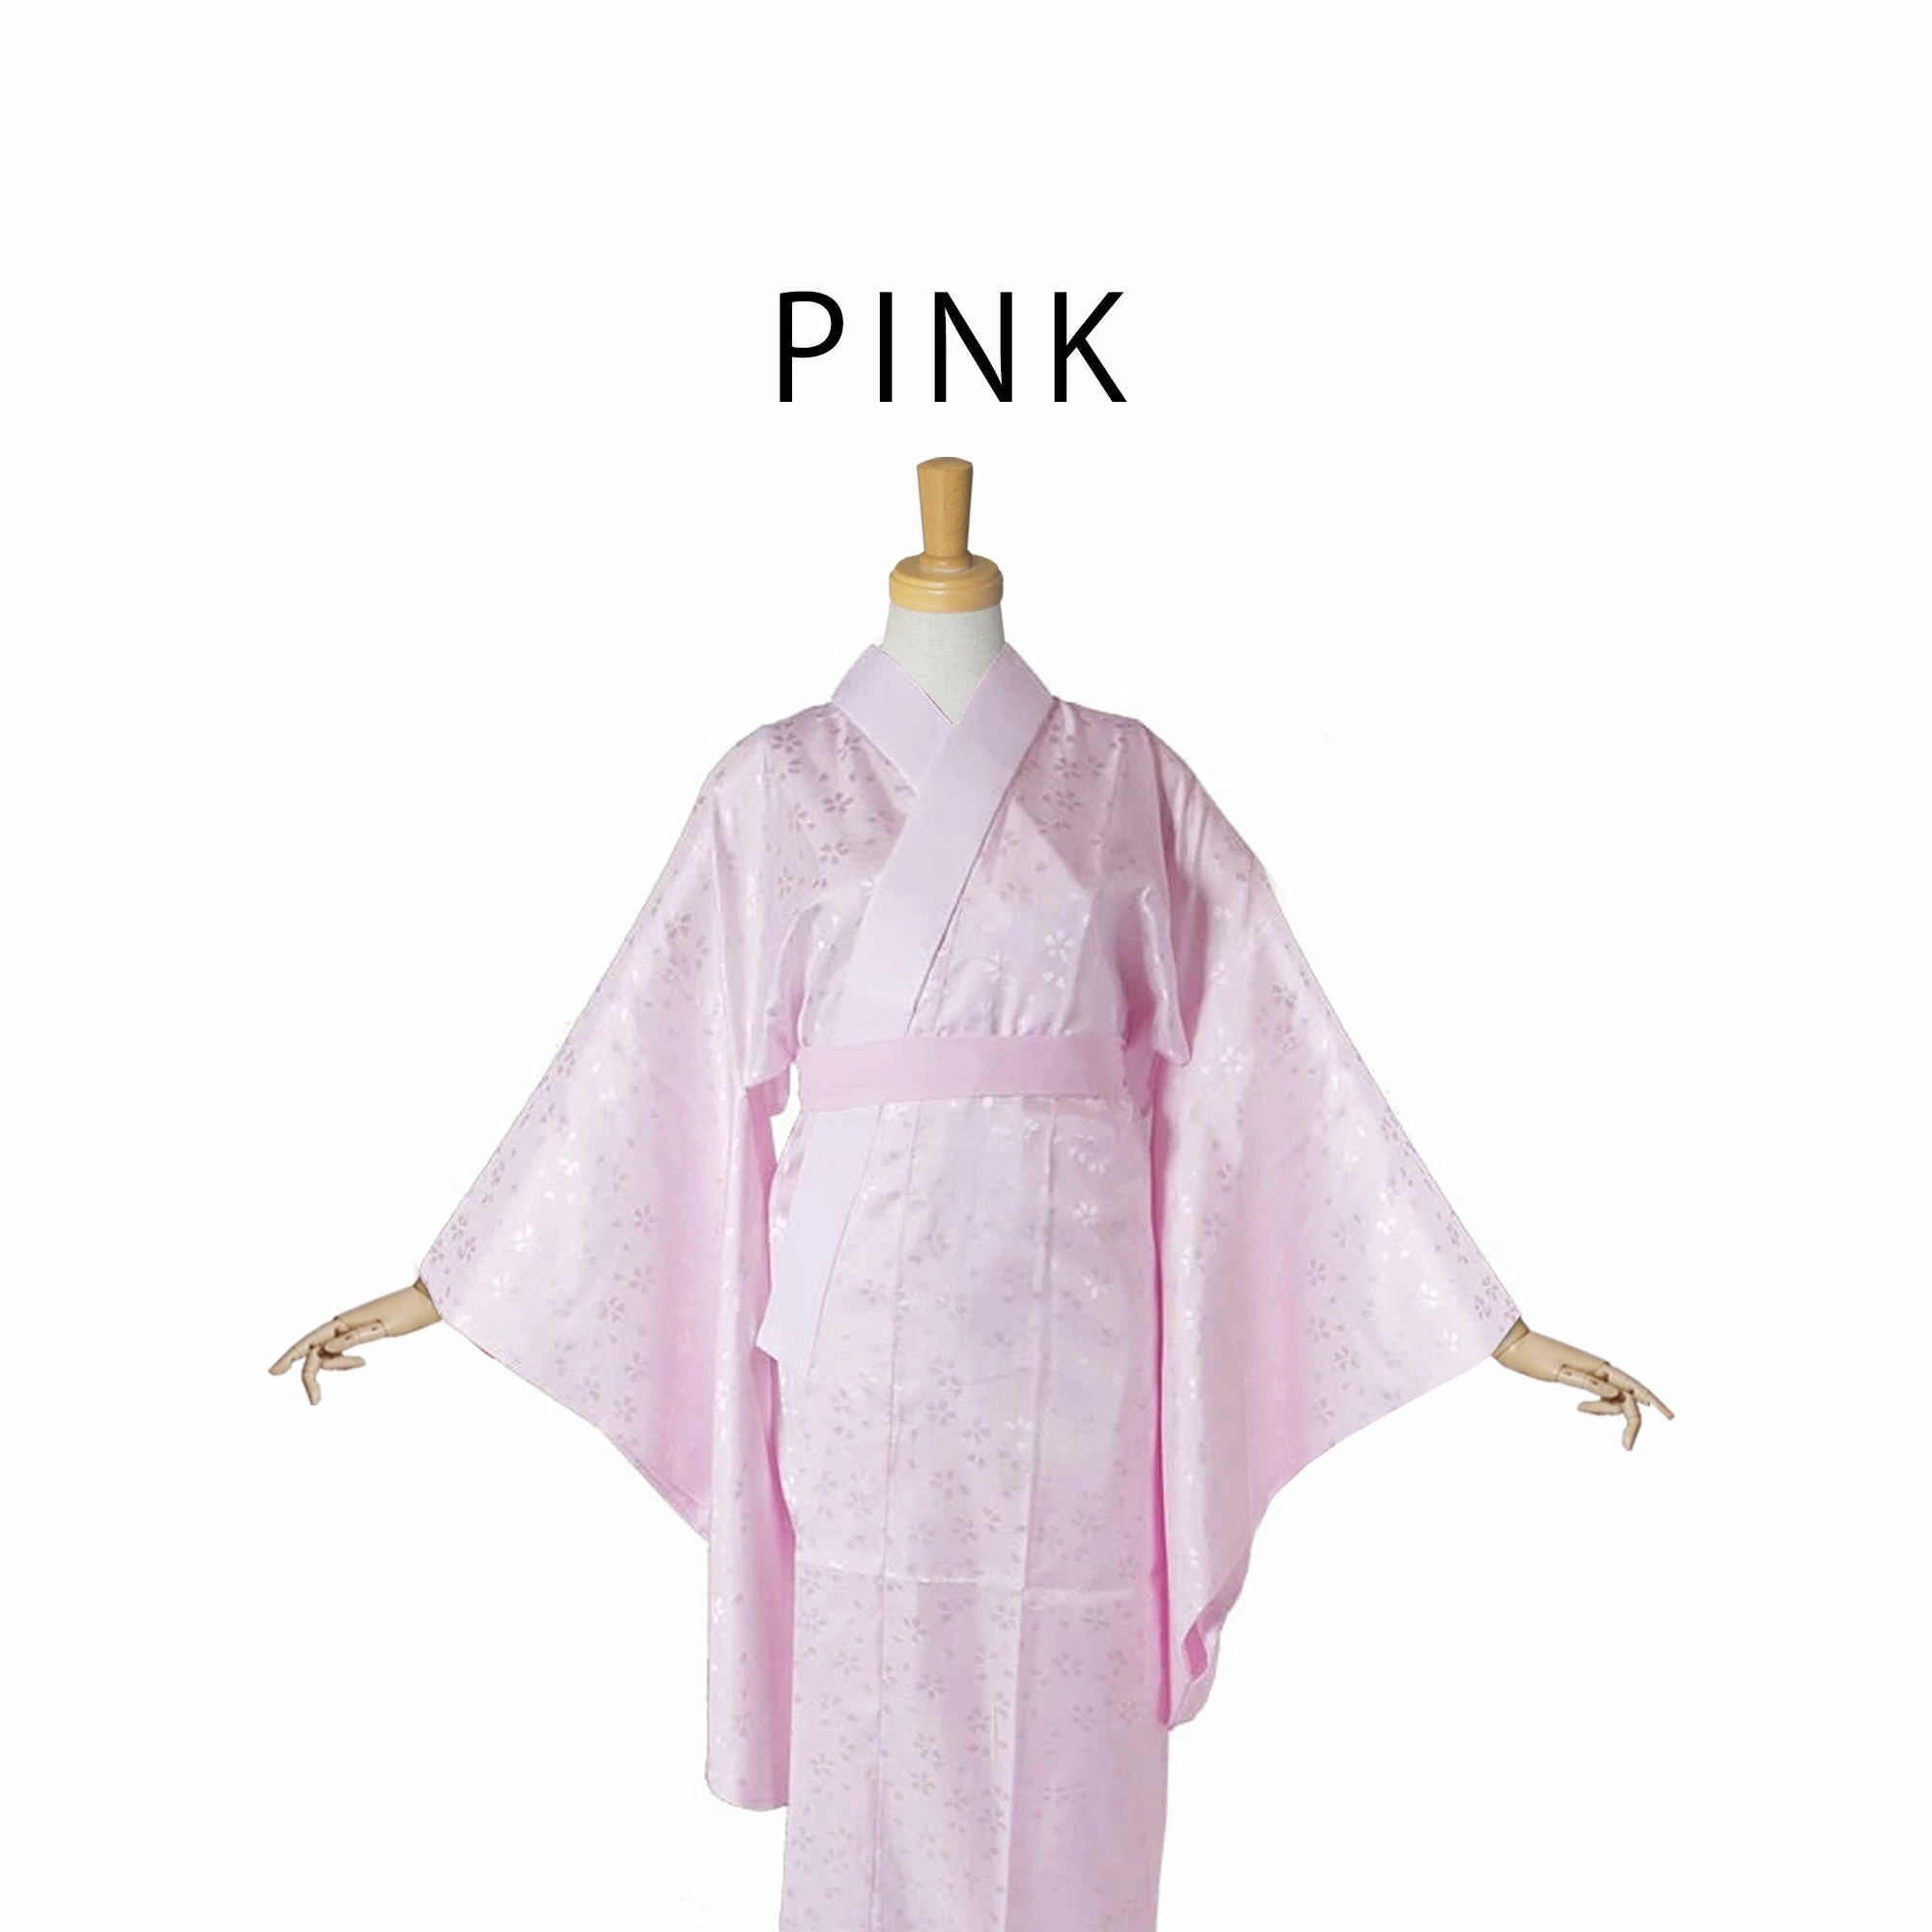 届いてすぐ着れる お仕立て上がり 洗える 二尺袖用 長襦袢 白 ピンク 